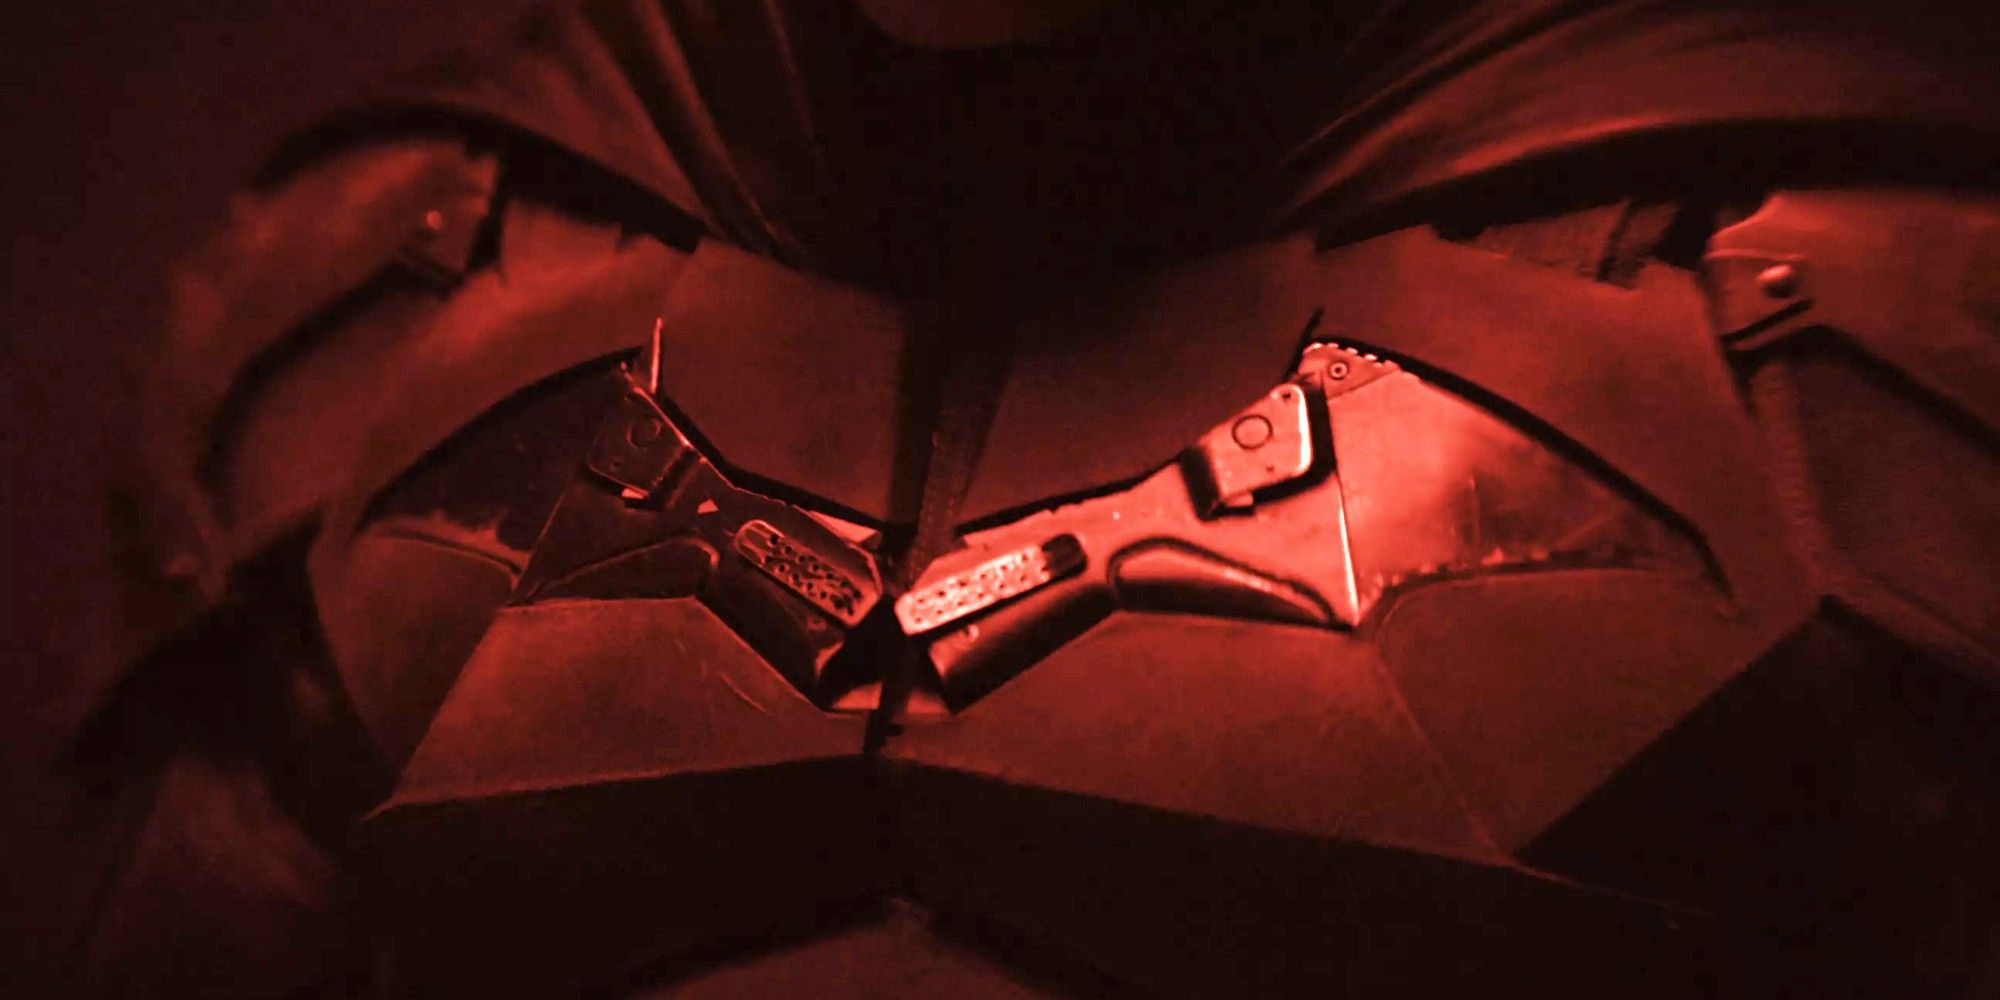 El director de Batman desacredita la teoría del traje de murciélago de que un arma mató a los Wayne